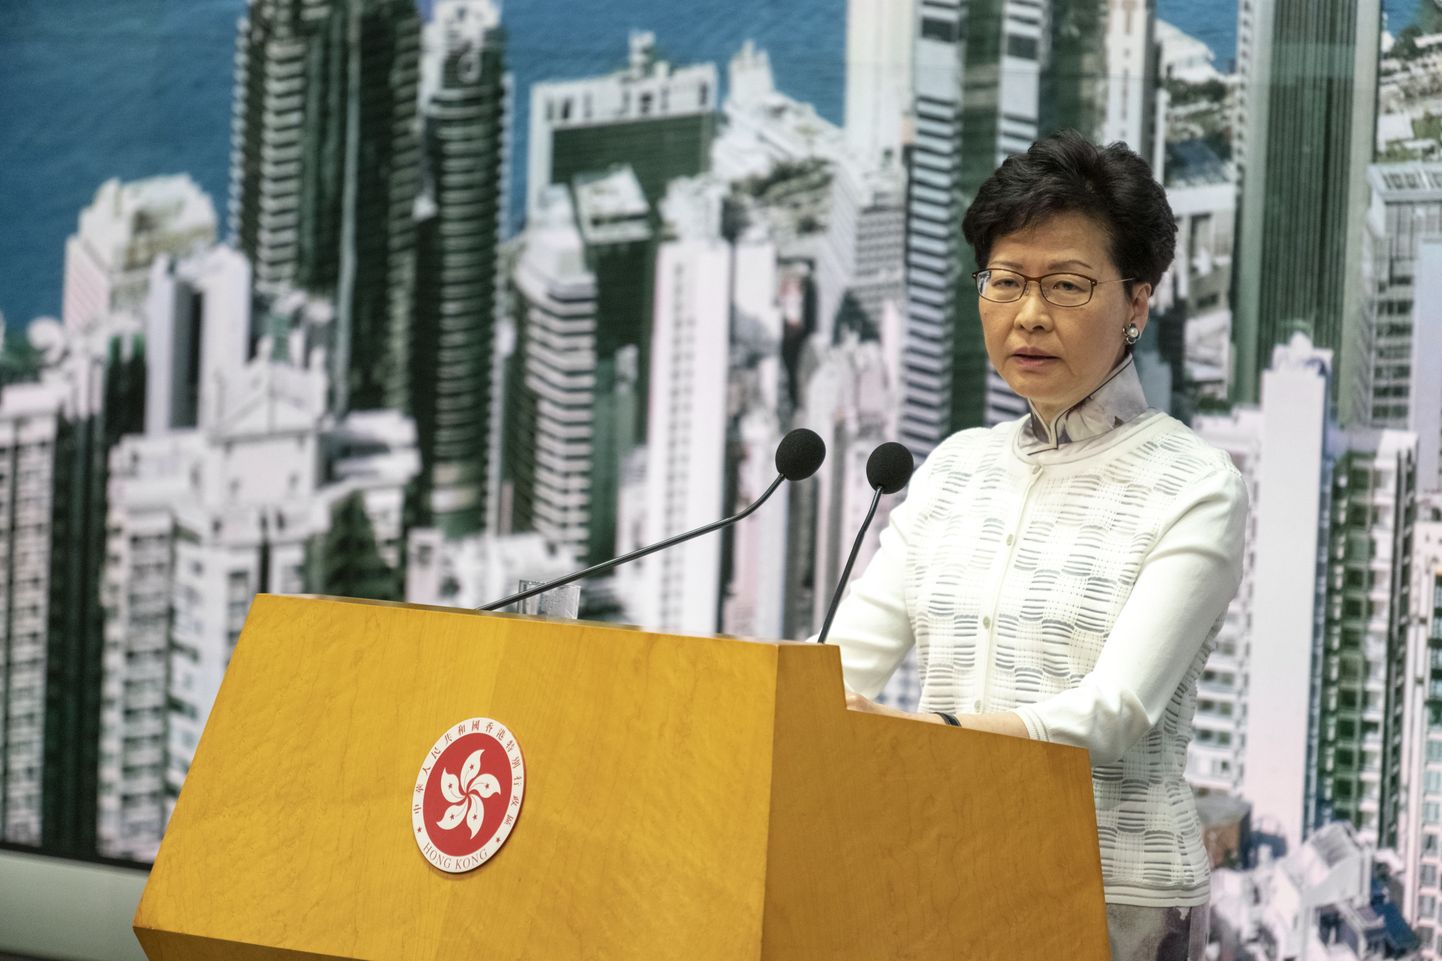 Laupäeval väljaandmisseaduse eelnõu arutelu peatamisest teatanud Hongkongi valitsusjuht Carrie Lam vabandas teisipäeval poliitilise kriisi ja rahutuste eest, mille valitsuse plaan hakata inimesi Mandri-Hiinale välja andma on põhjustanud.